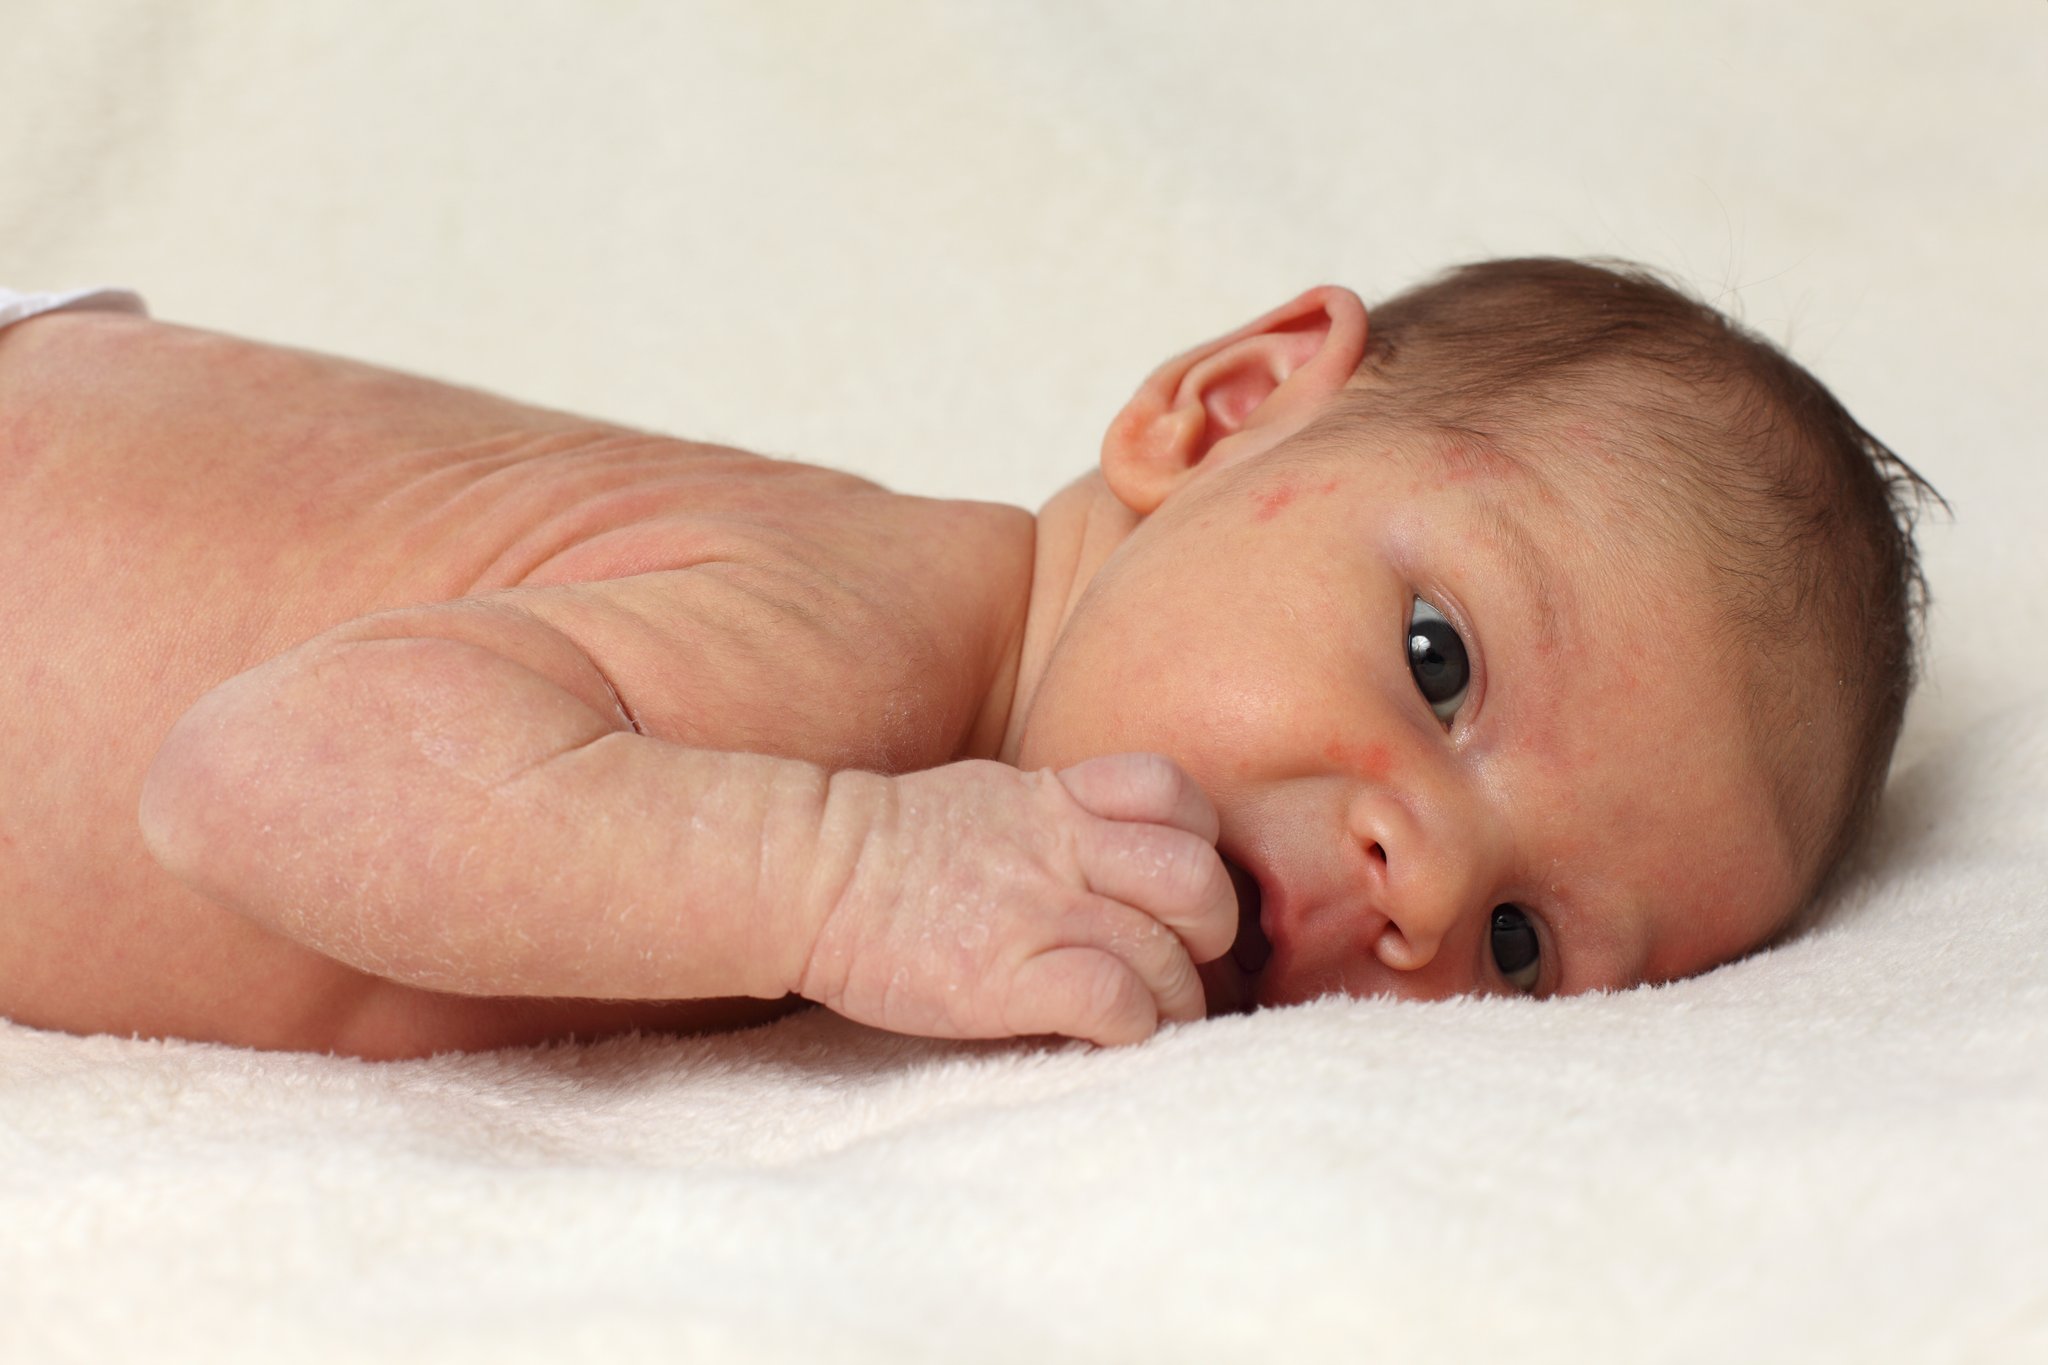 Les bébés ont souvent de l'eczéma ? Peut-être que la nourriture de la mère est la cause